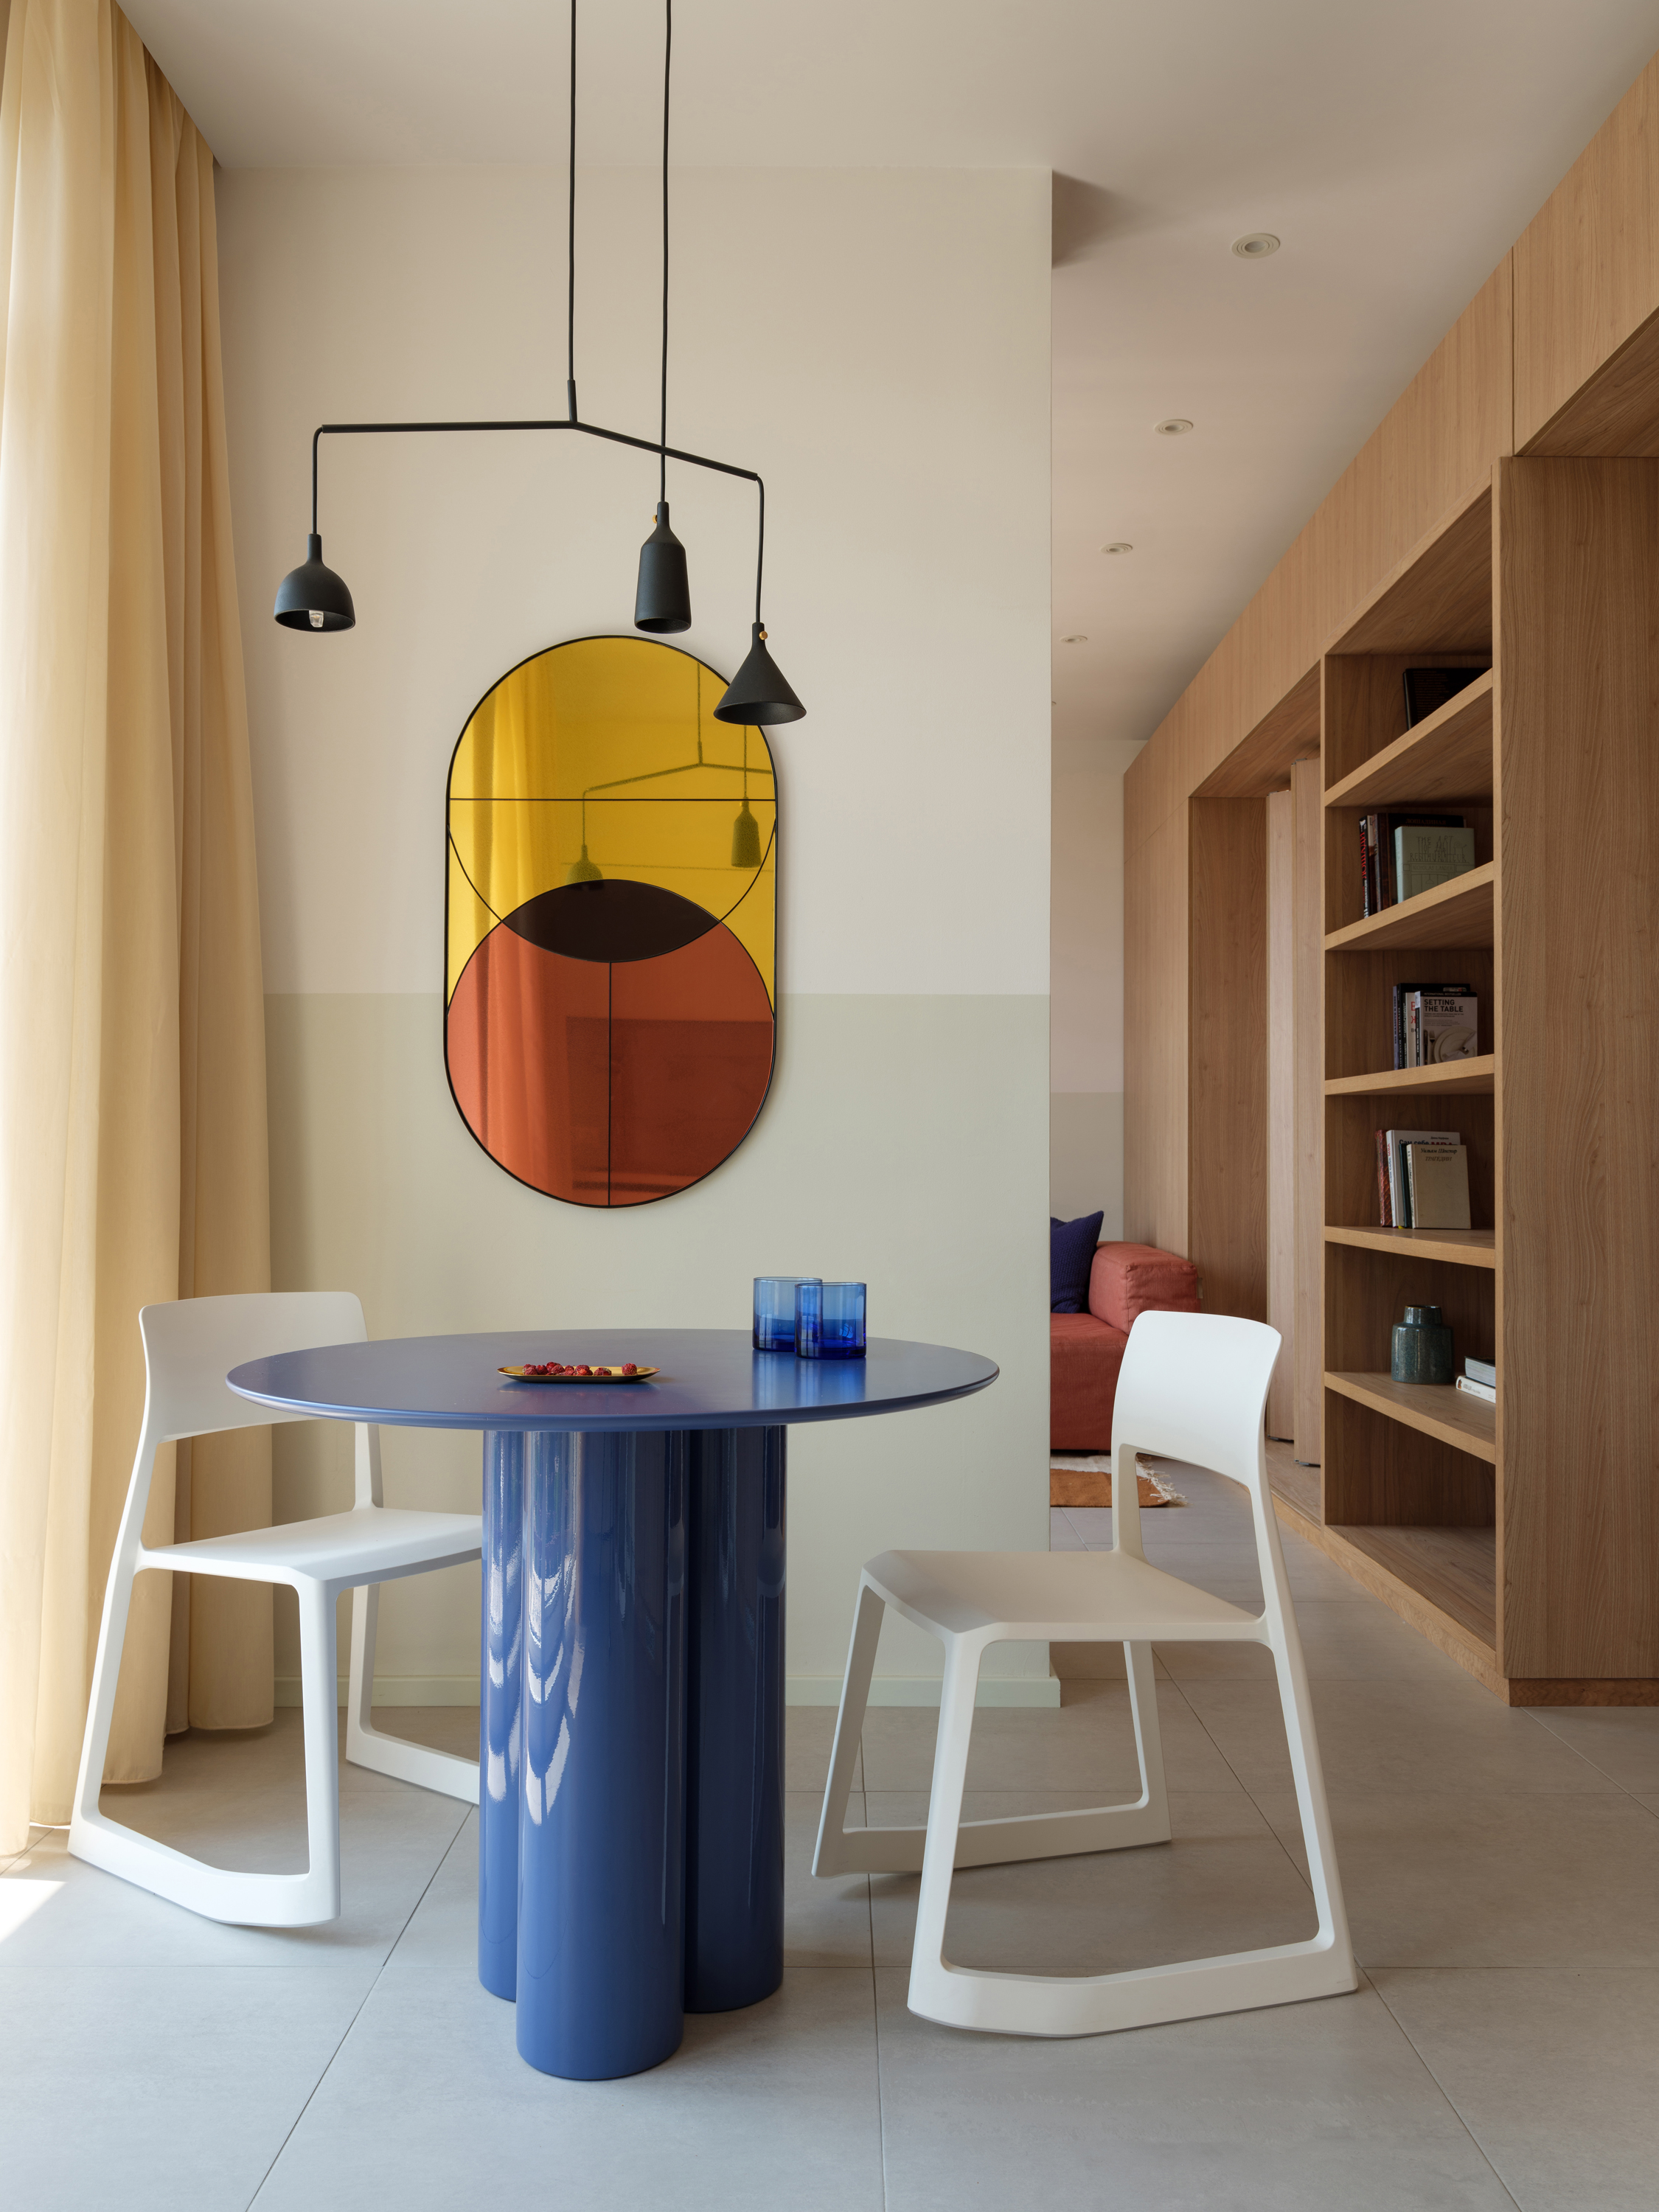 9J Apartment by Artem Trigubchak